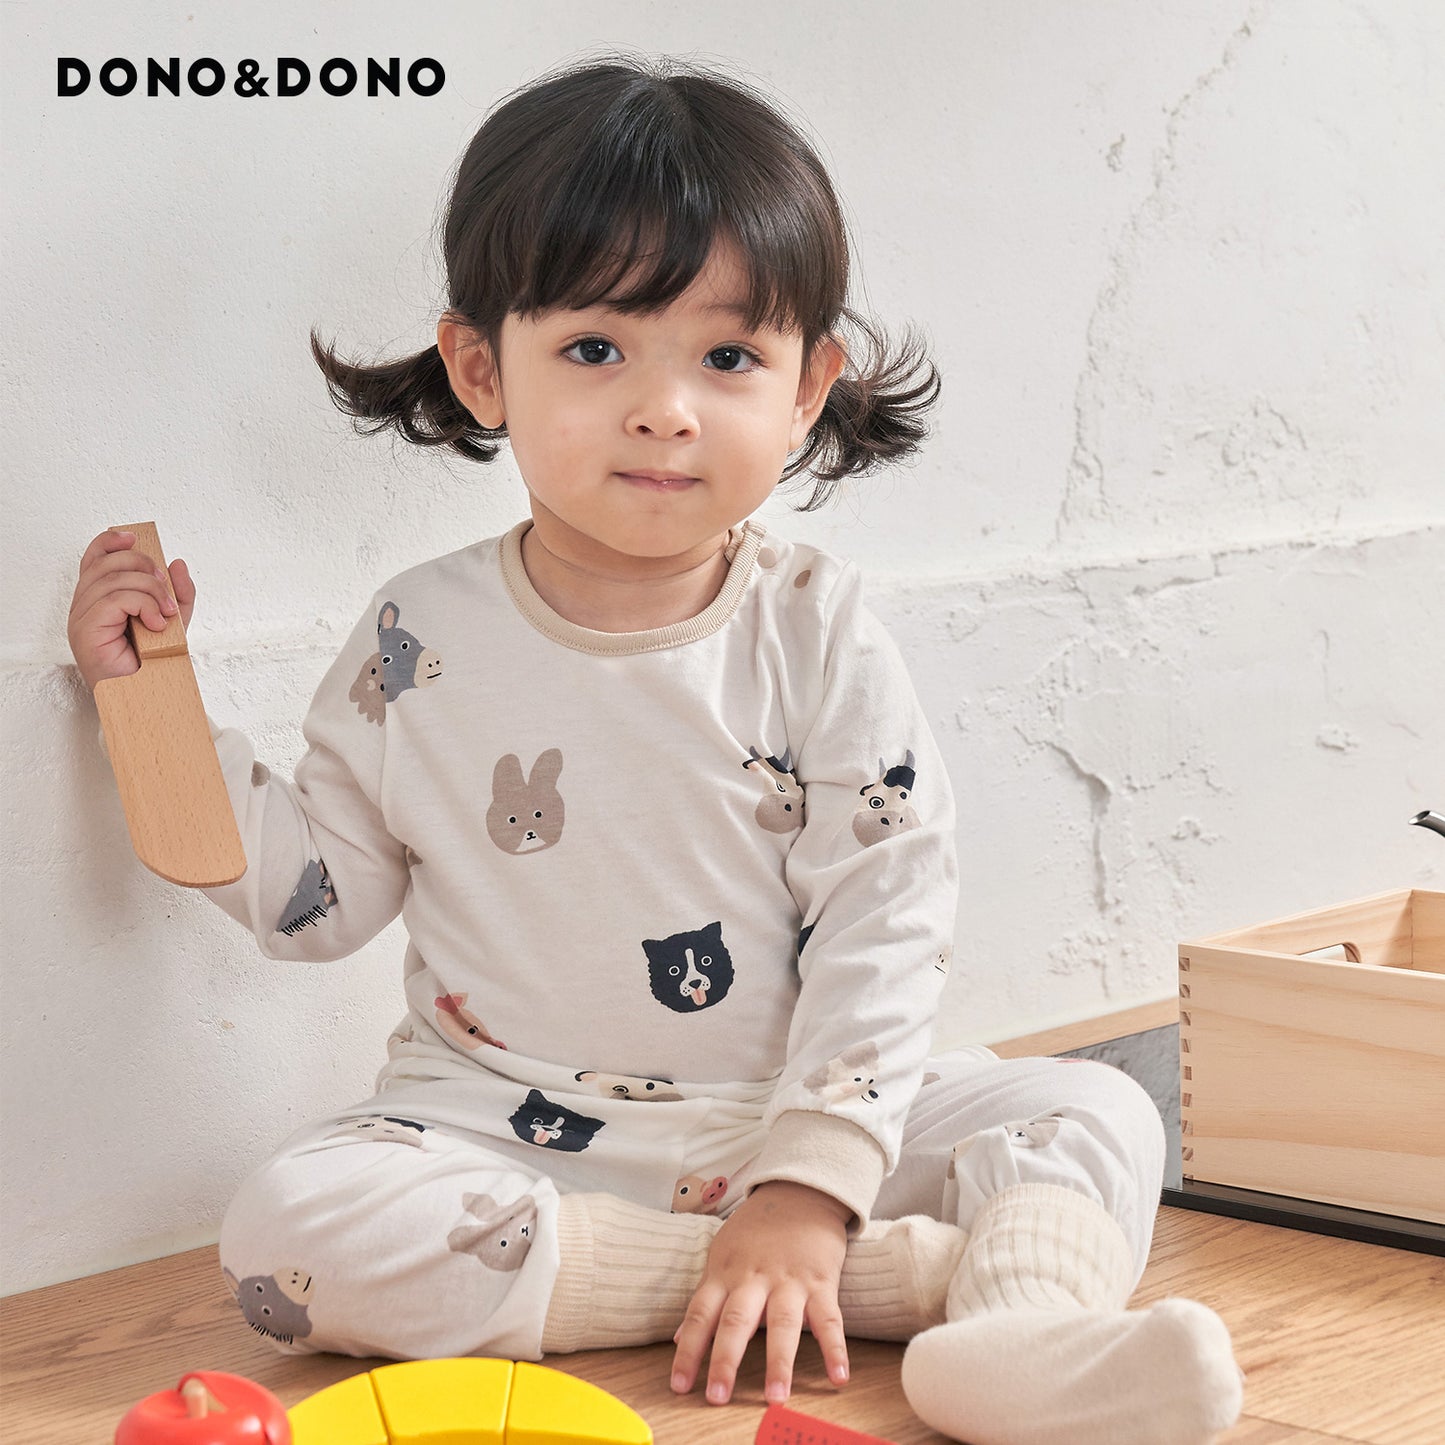 ベビーキッズ長袖パジャマ 0歳から8歳まで選べるサイズ展開 サスティナブルなコットンモダール素材 ーDONO&DONO製品2個以上同時購入で１０%OFFー